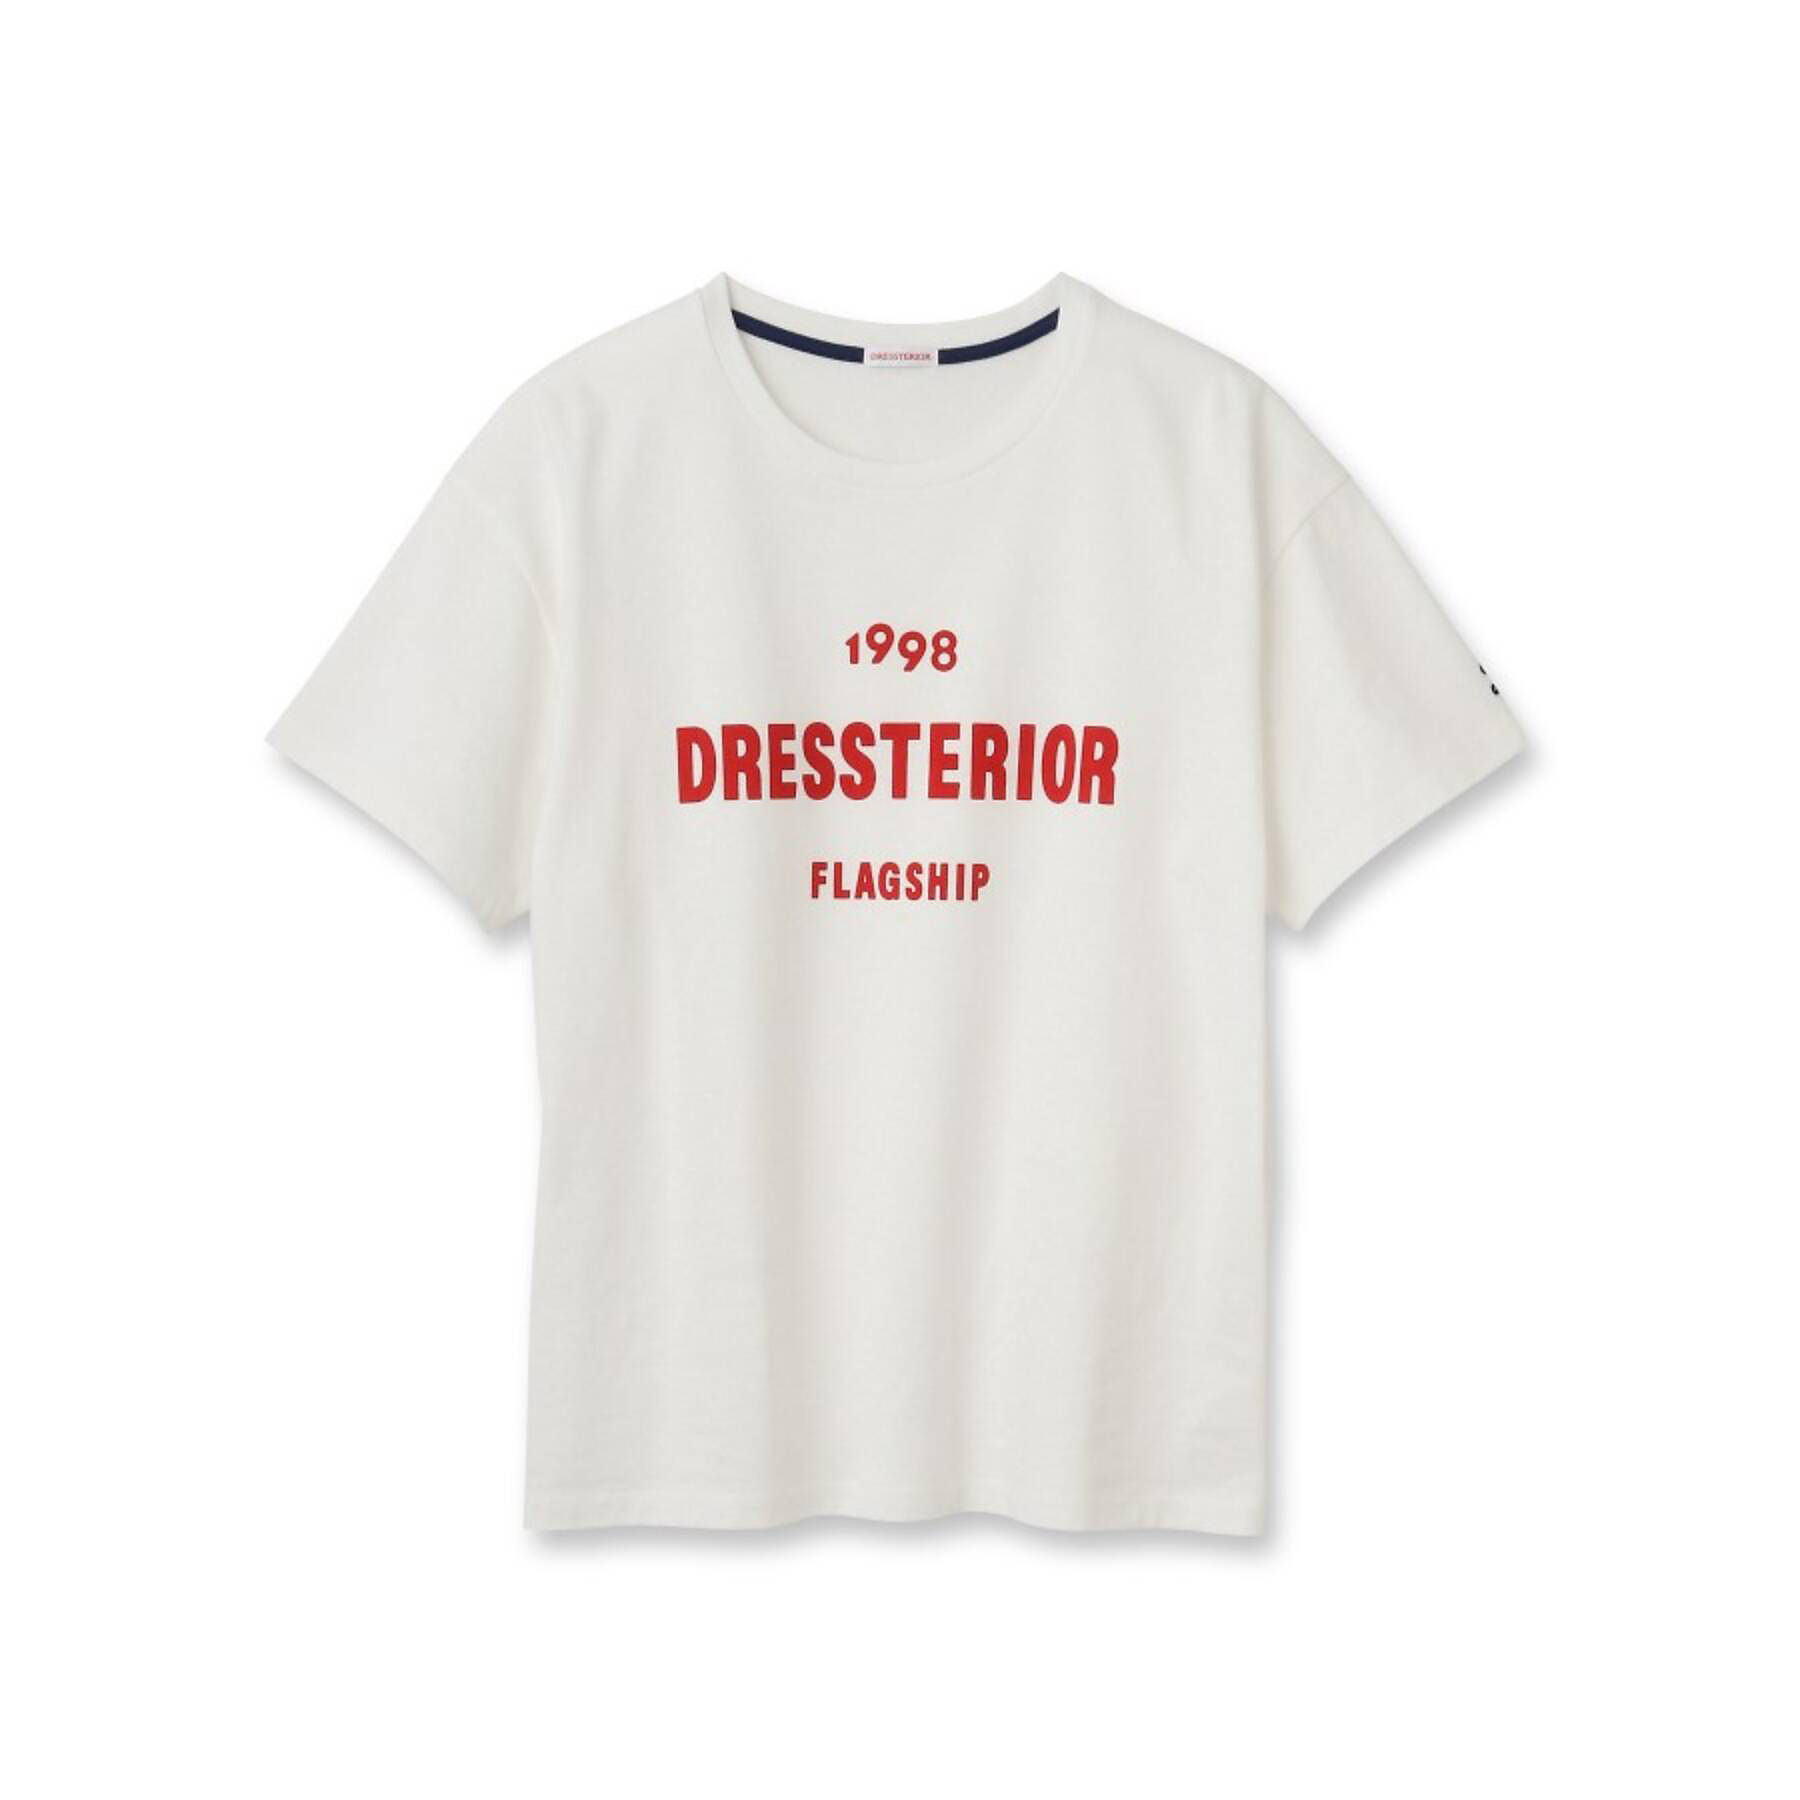 DRESSTERIOR(Ladies)
【ご好評につき追加決定】ドレステリア渋谷フラッグシップOPEN記念限定Tシャツ
￥6,600